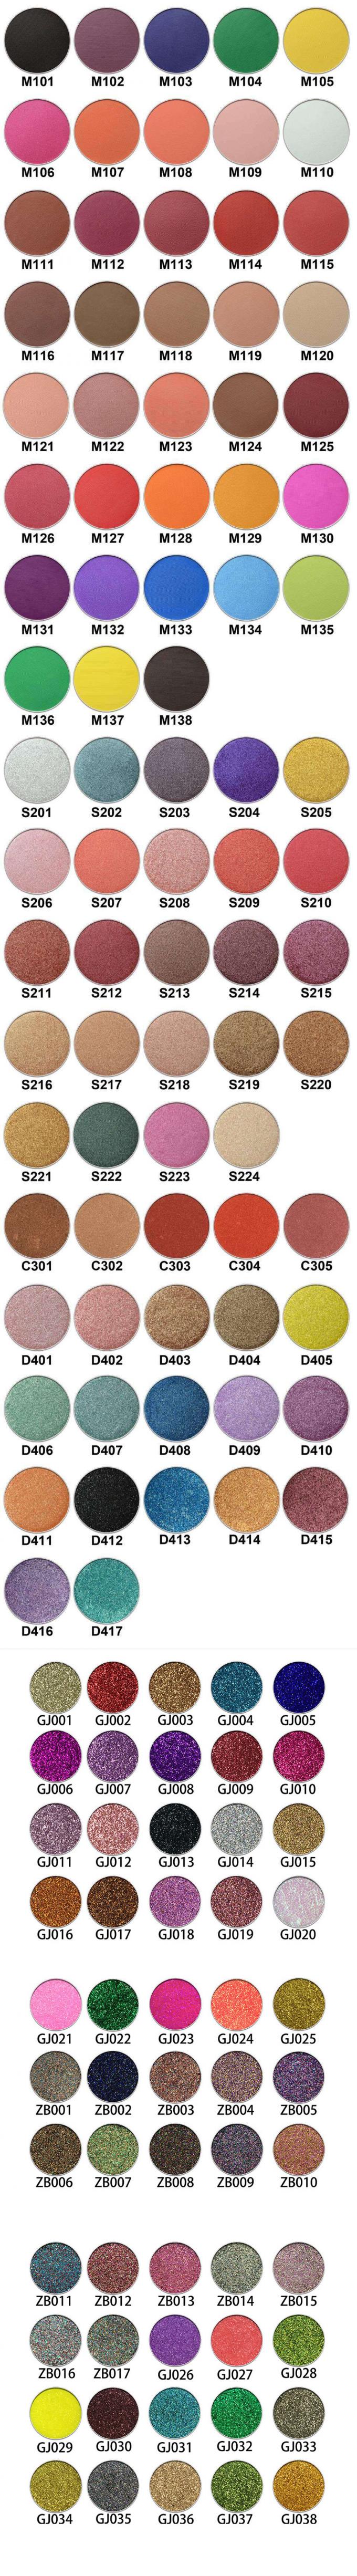 Mineralfunkeln-Pigment-Lidschatten, Make-uplidschatten-Palette mit 9 bunten Wannen